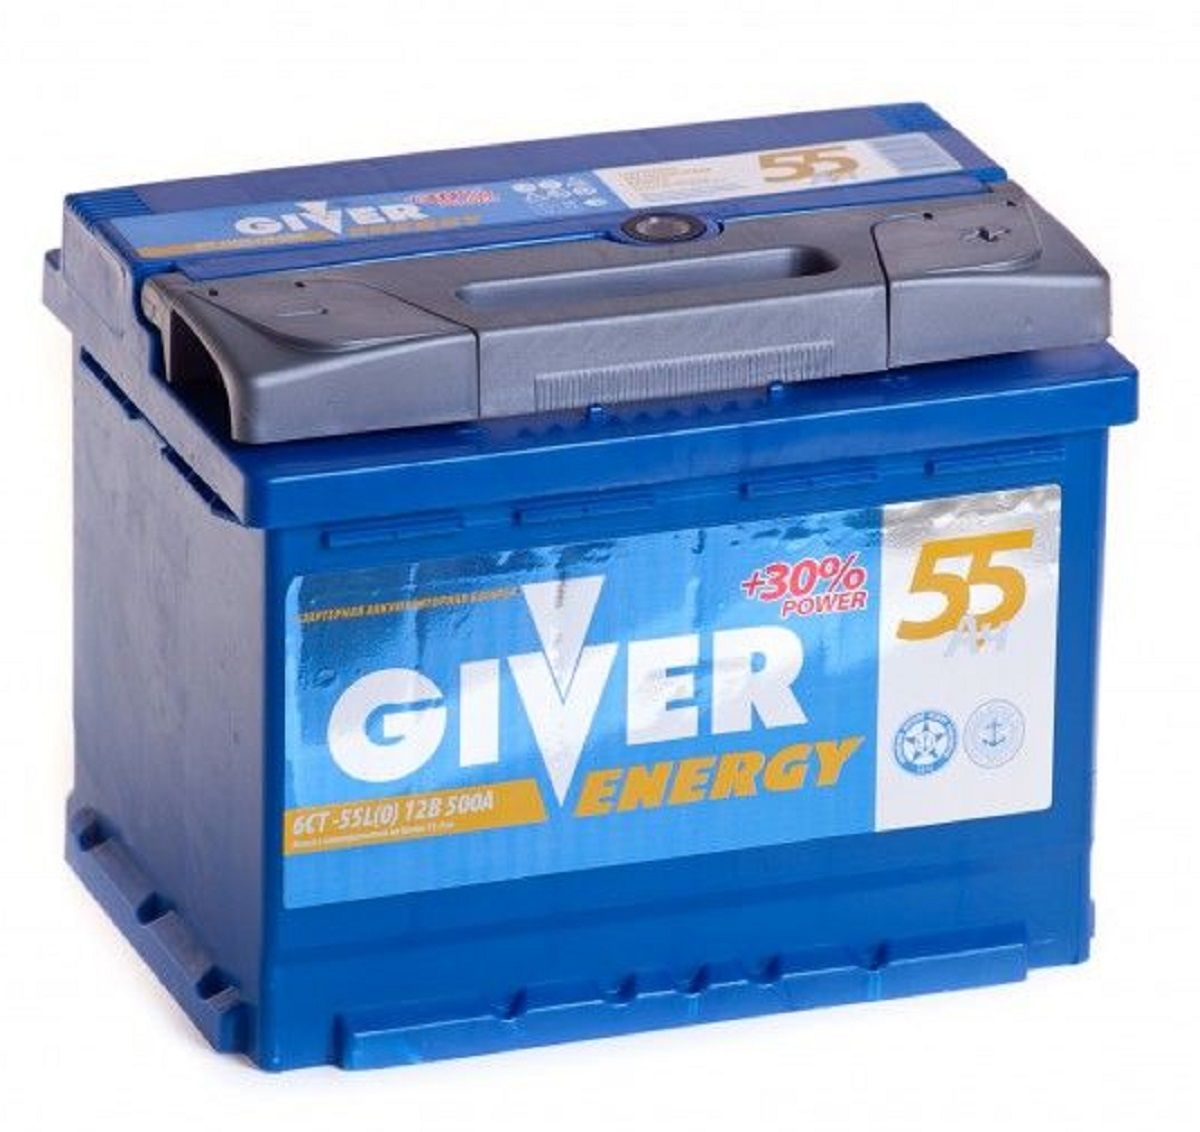 Аккумулятор автомобильный energy. Аккумулятор giver Energy. Giver Energy 6ст -60.1. Аккумулятор 55ач. Giver Energy 6ст -65.0.